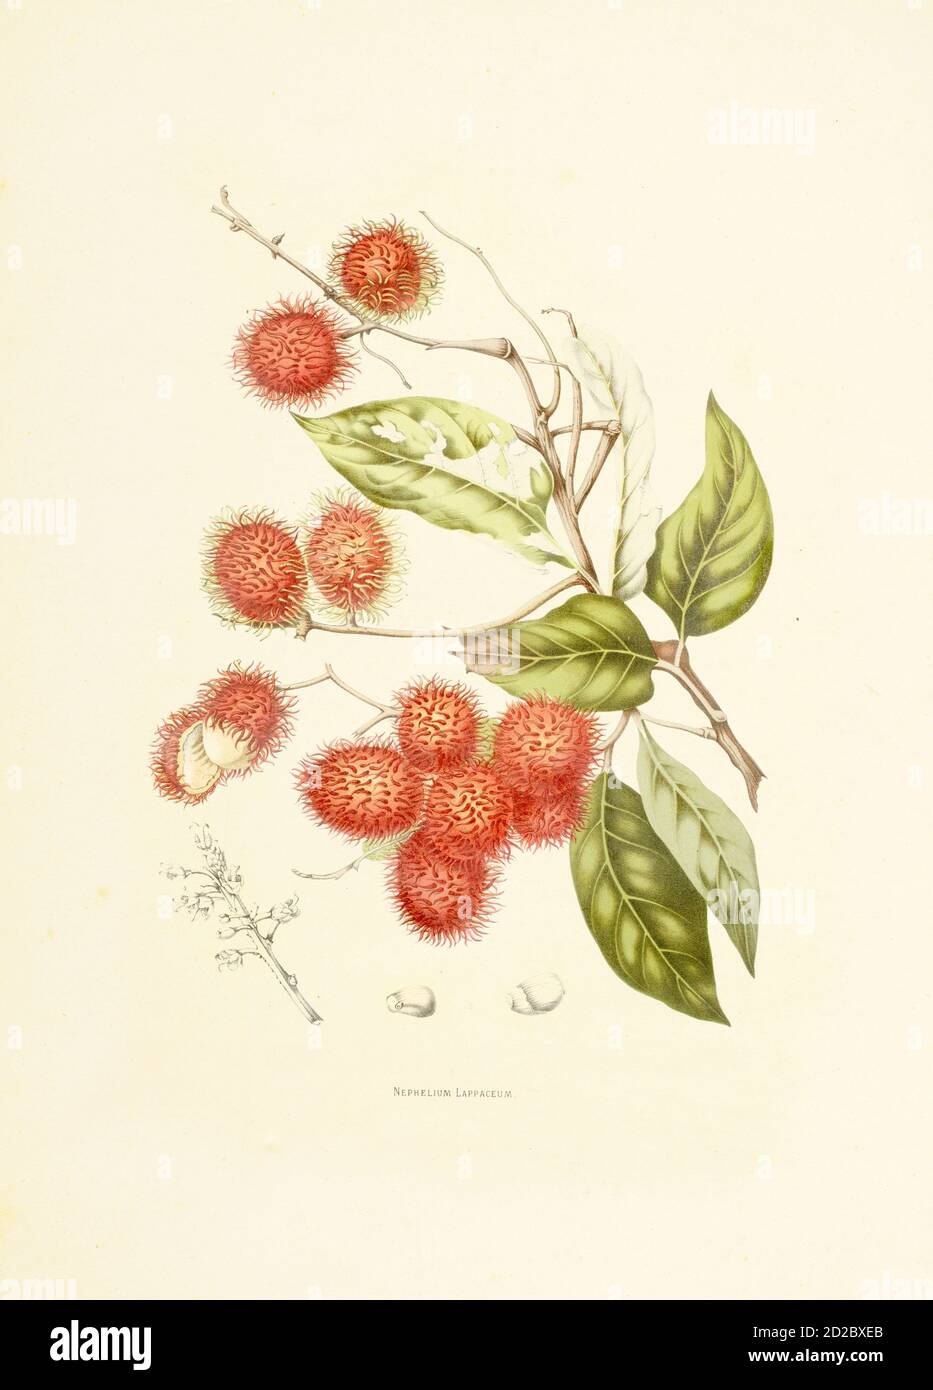 Gravure antique d'un néphélium lapaceum, également connu sous le nom de rambutan. Illustration de Berthe Hoola van Nooten du livre fleurs, fruits et feuilles Banque D'Images